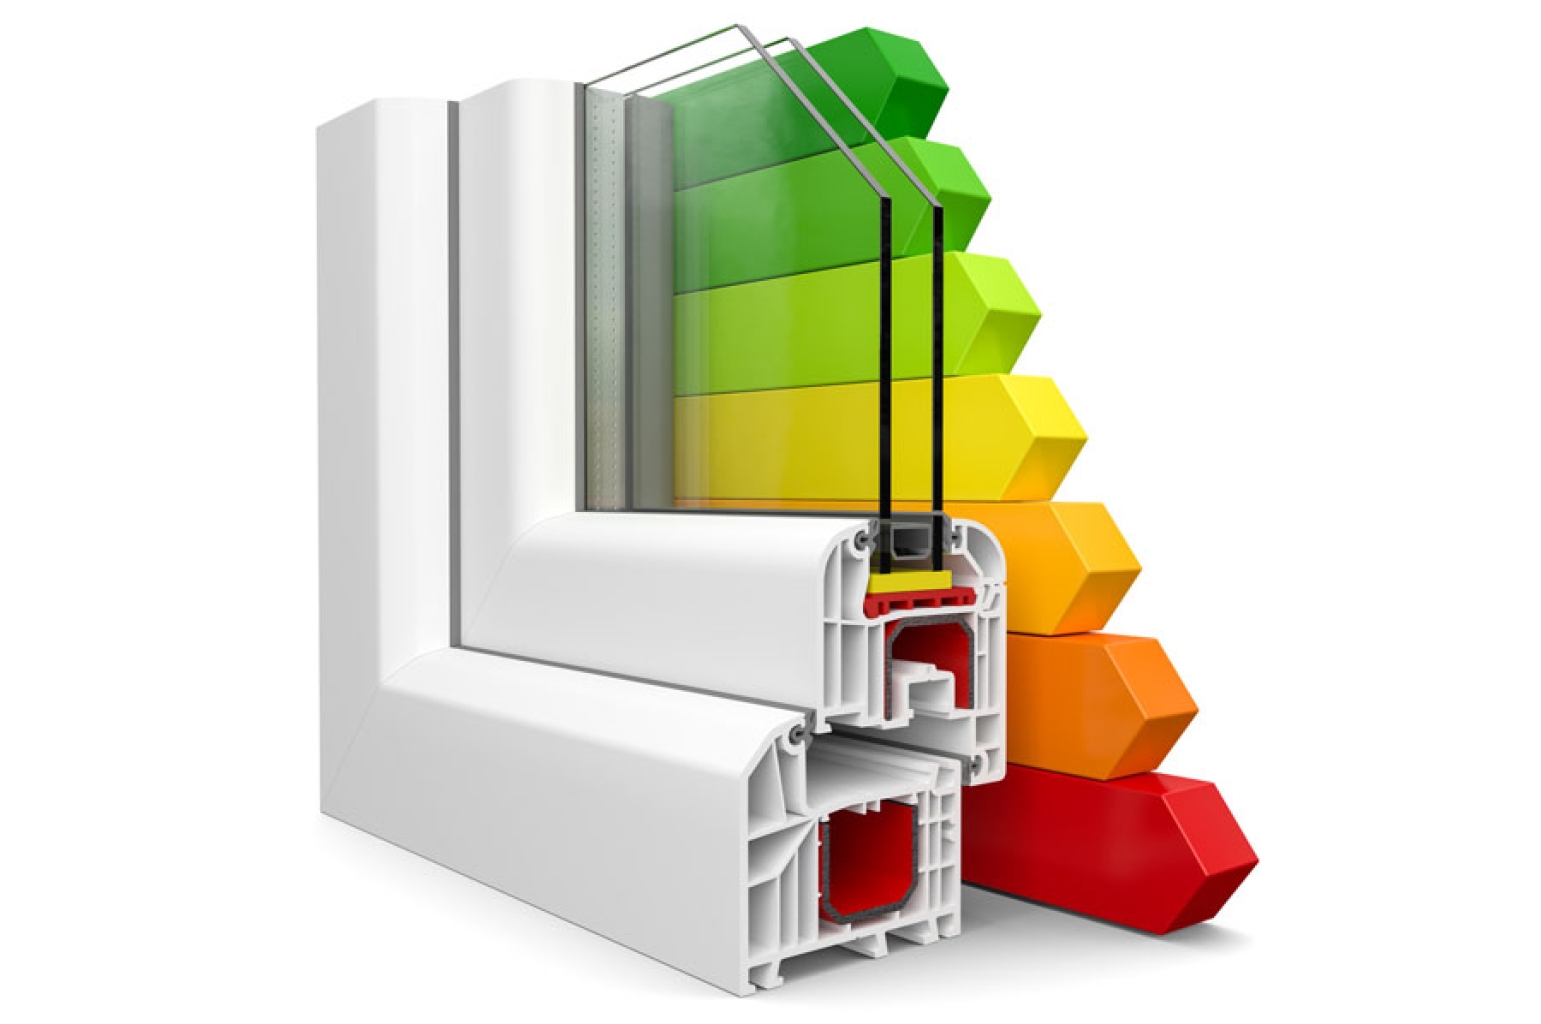 Infissi: quali soluzioni di finestre e porte finestre sono consigliate per il risparmio energetico?